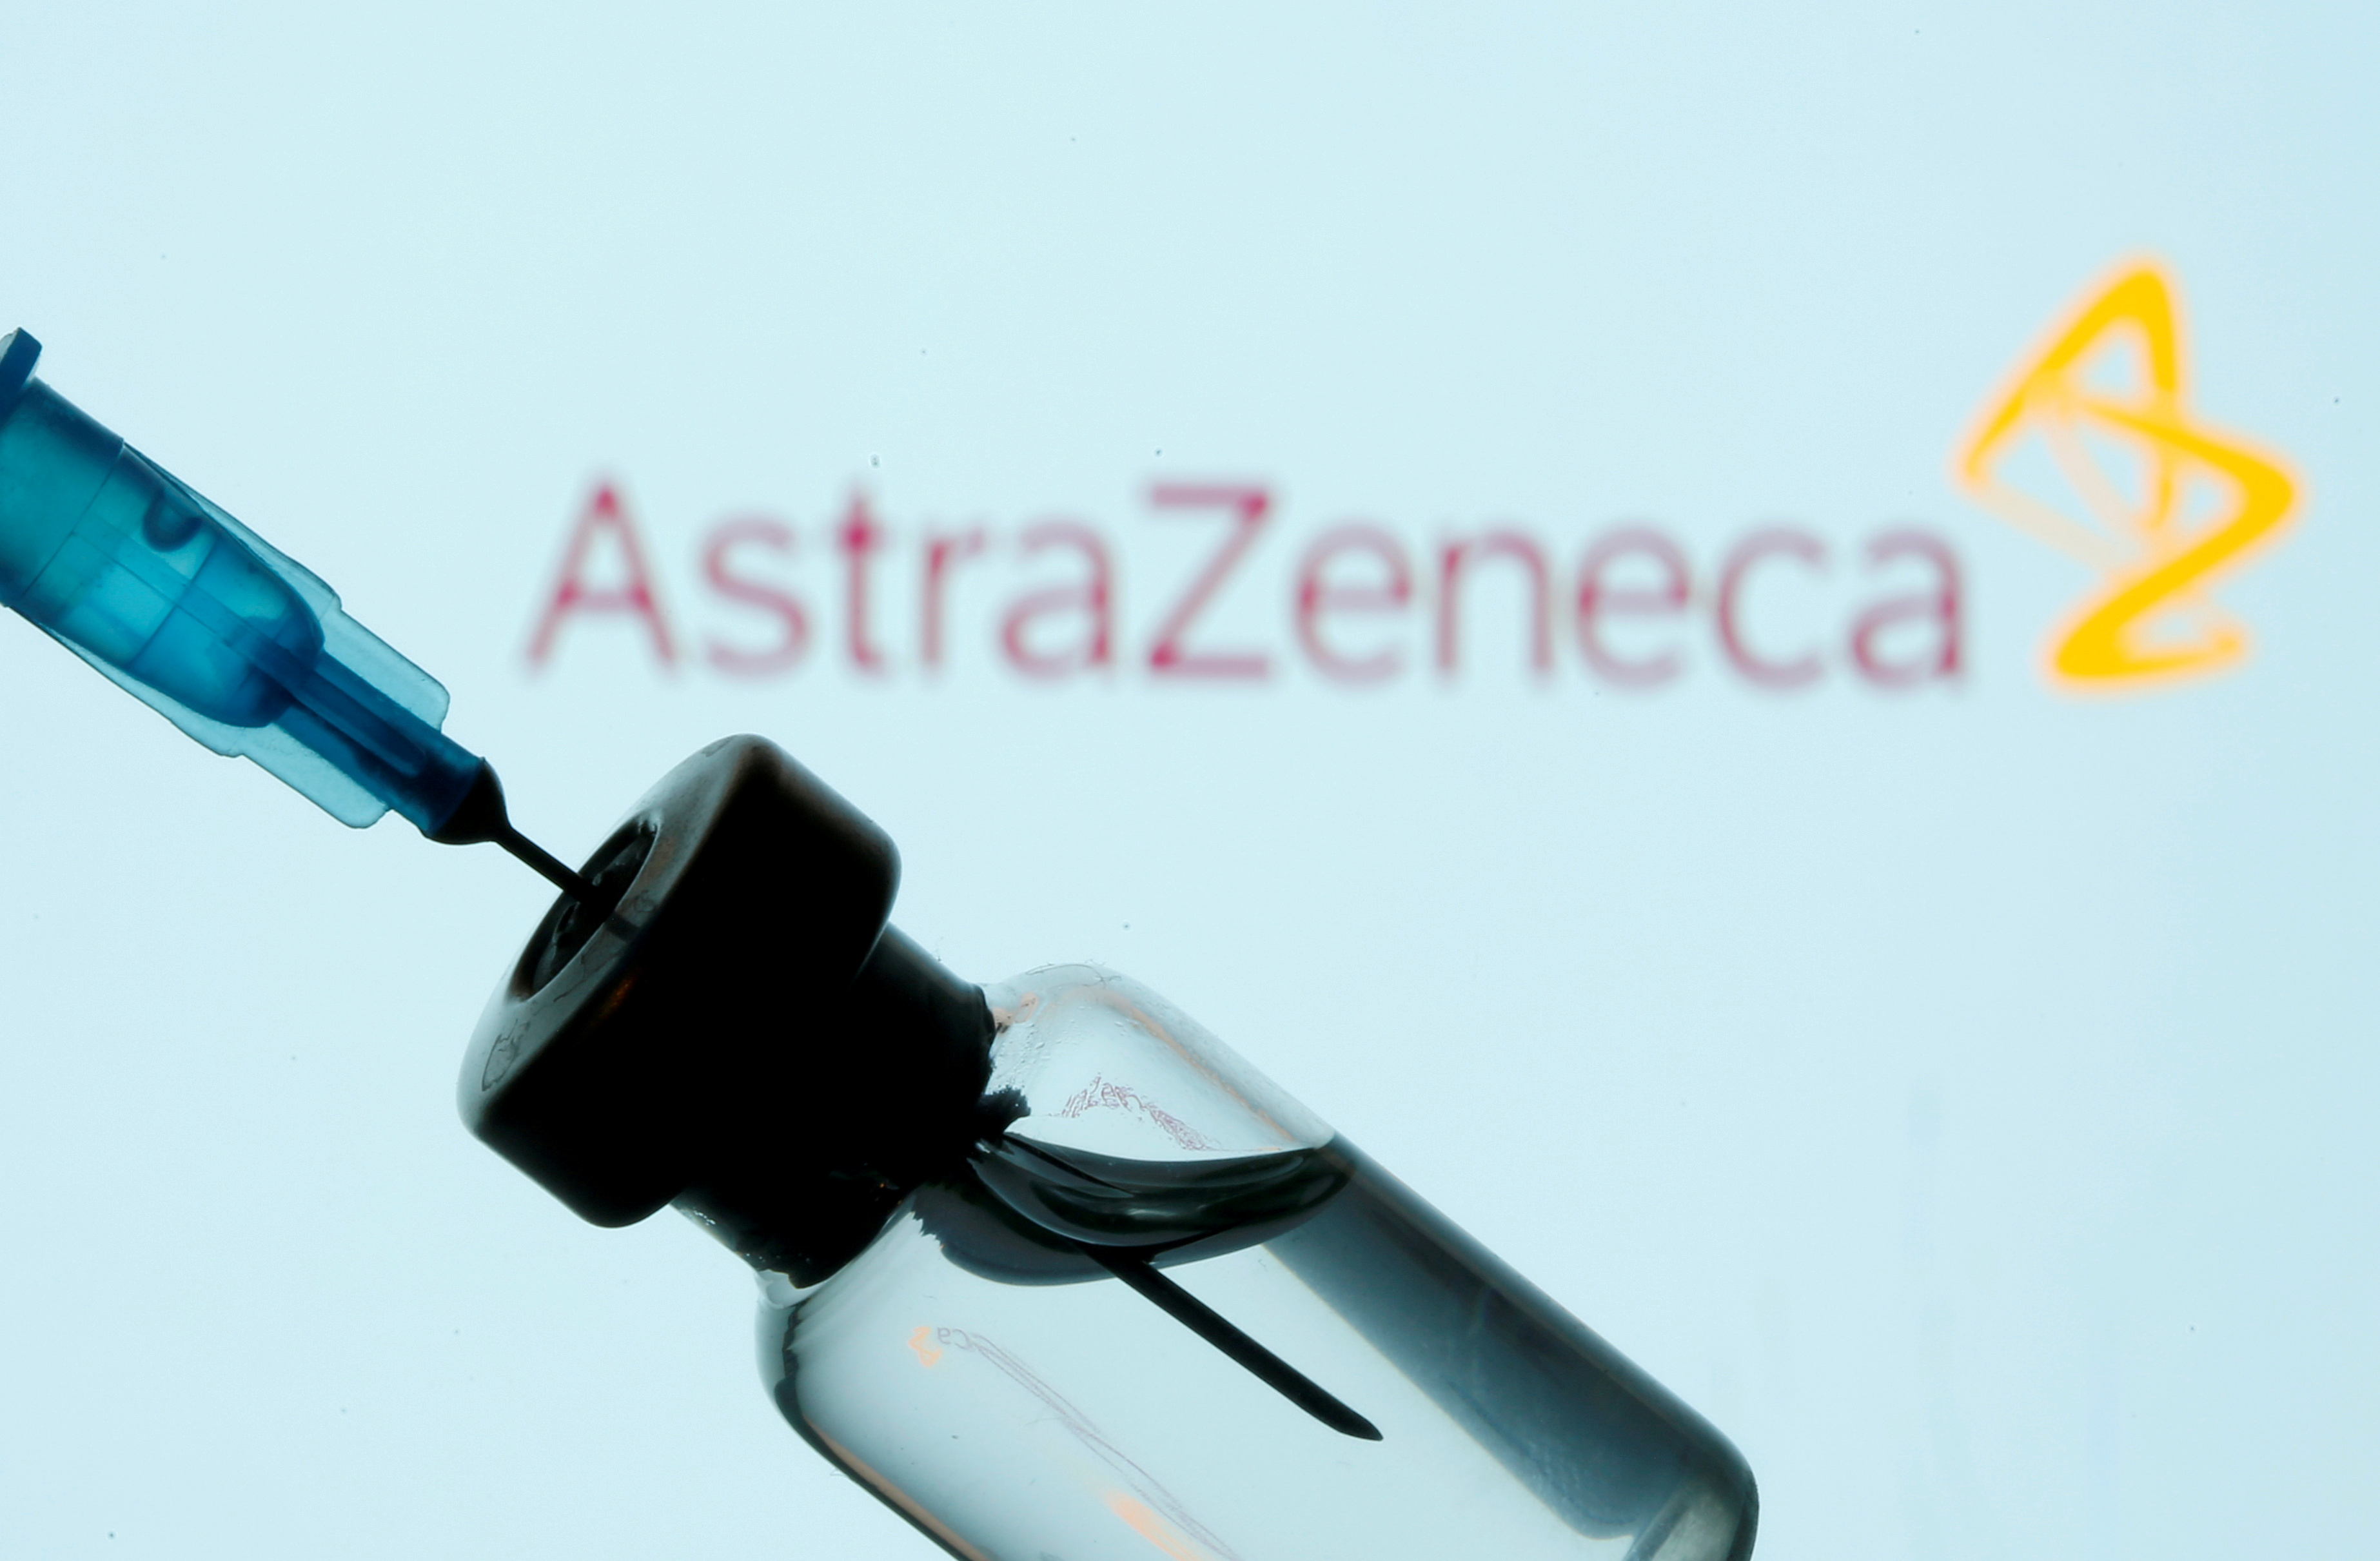 Recomiendan suspender la vacuna de AstraZeneca en Irlanda por “precaución”